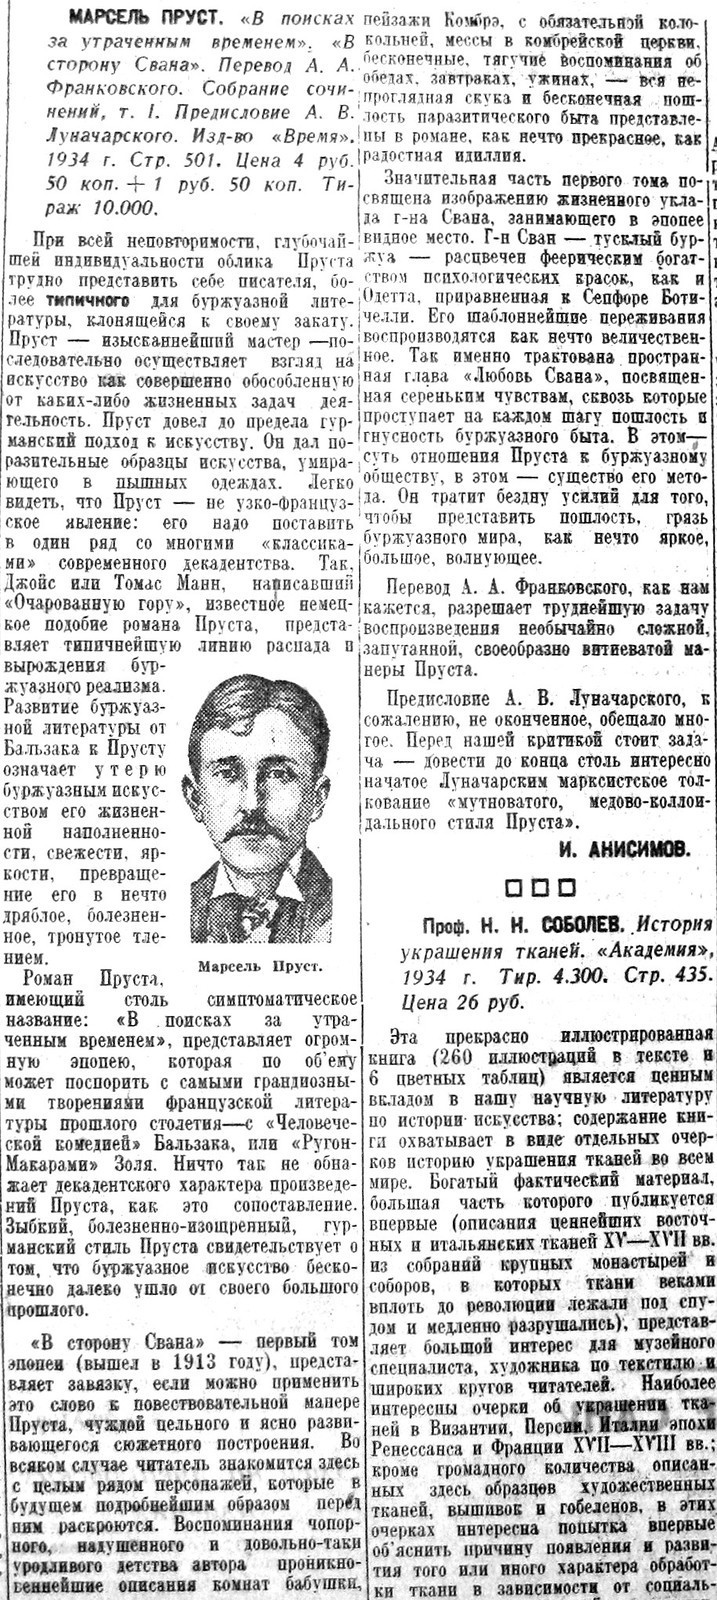 «Известия», 18 июля 1934 г.